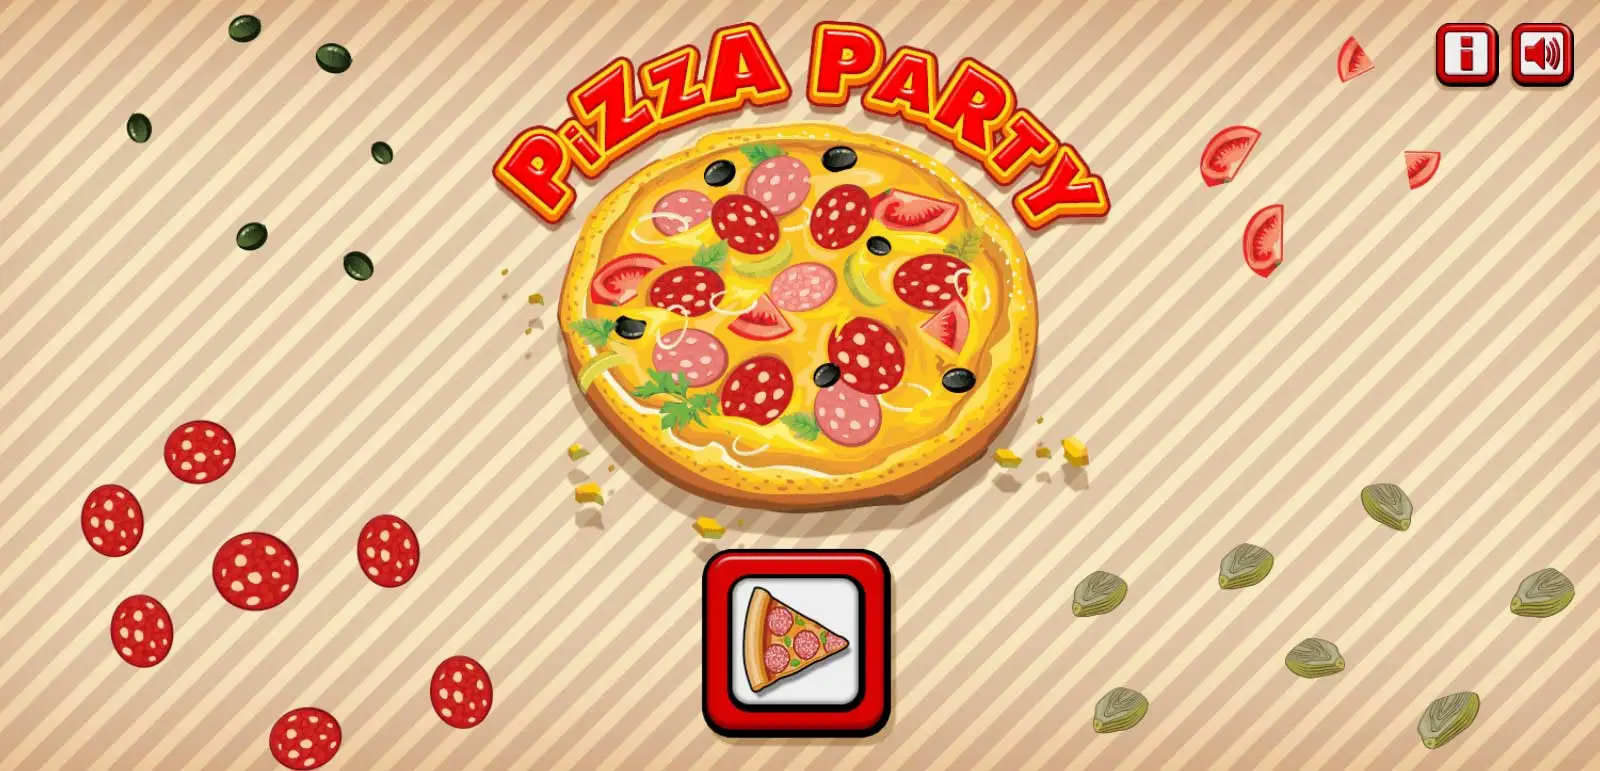 لعبة Pizza Party بيزا بارتي حفلة البيتزا لعبة طبخ